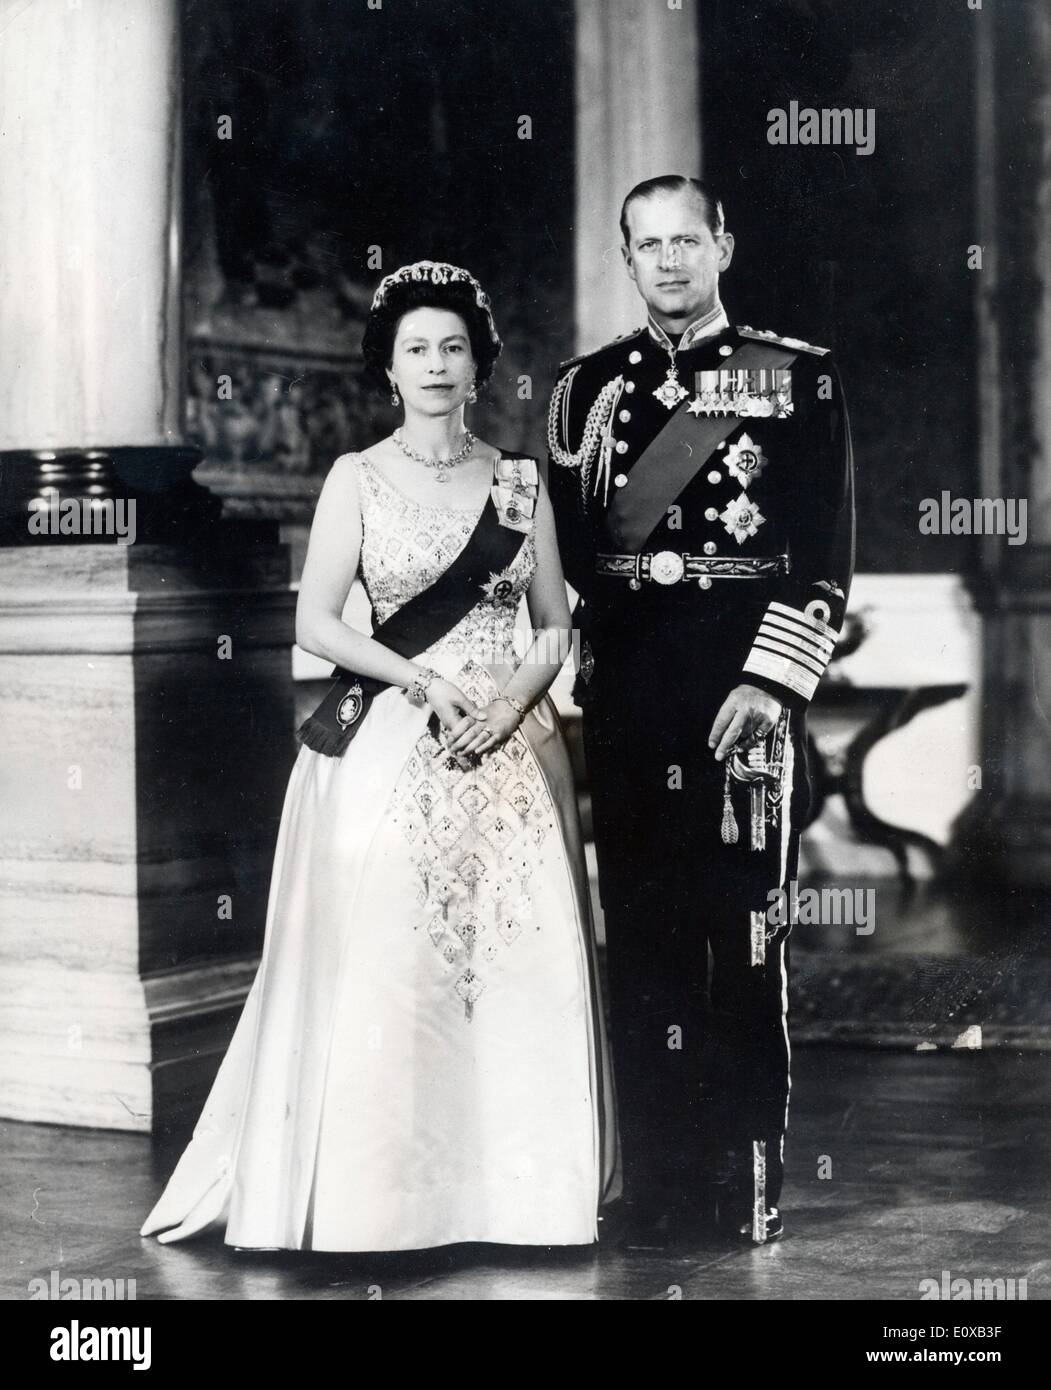 Königin Elizabeth II und Prinz Philip in "Admiral der Flotte" uniform Stockfoto